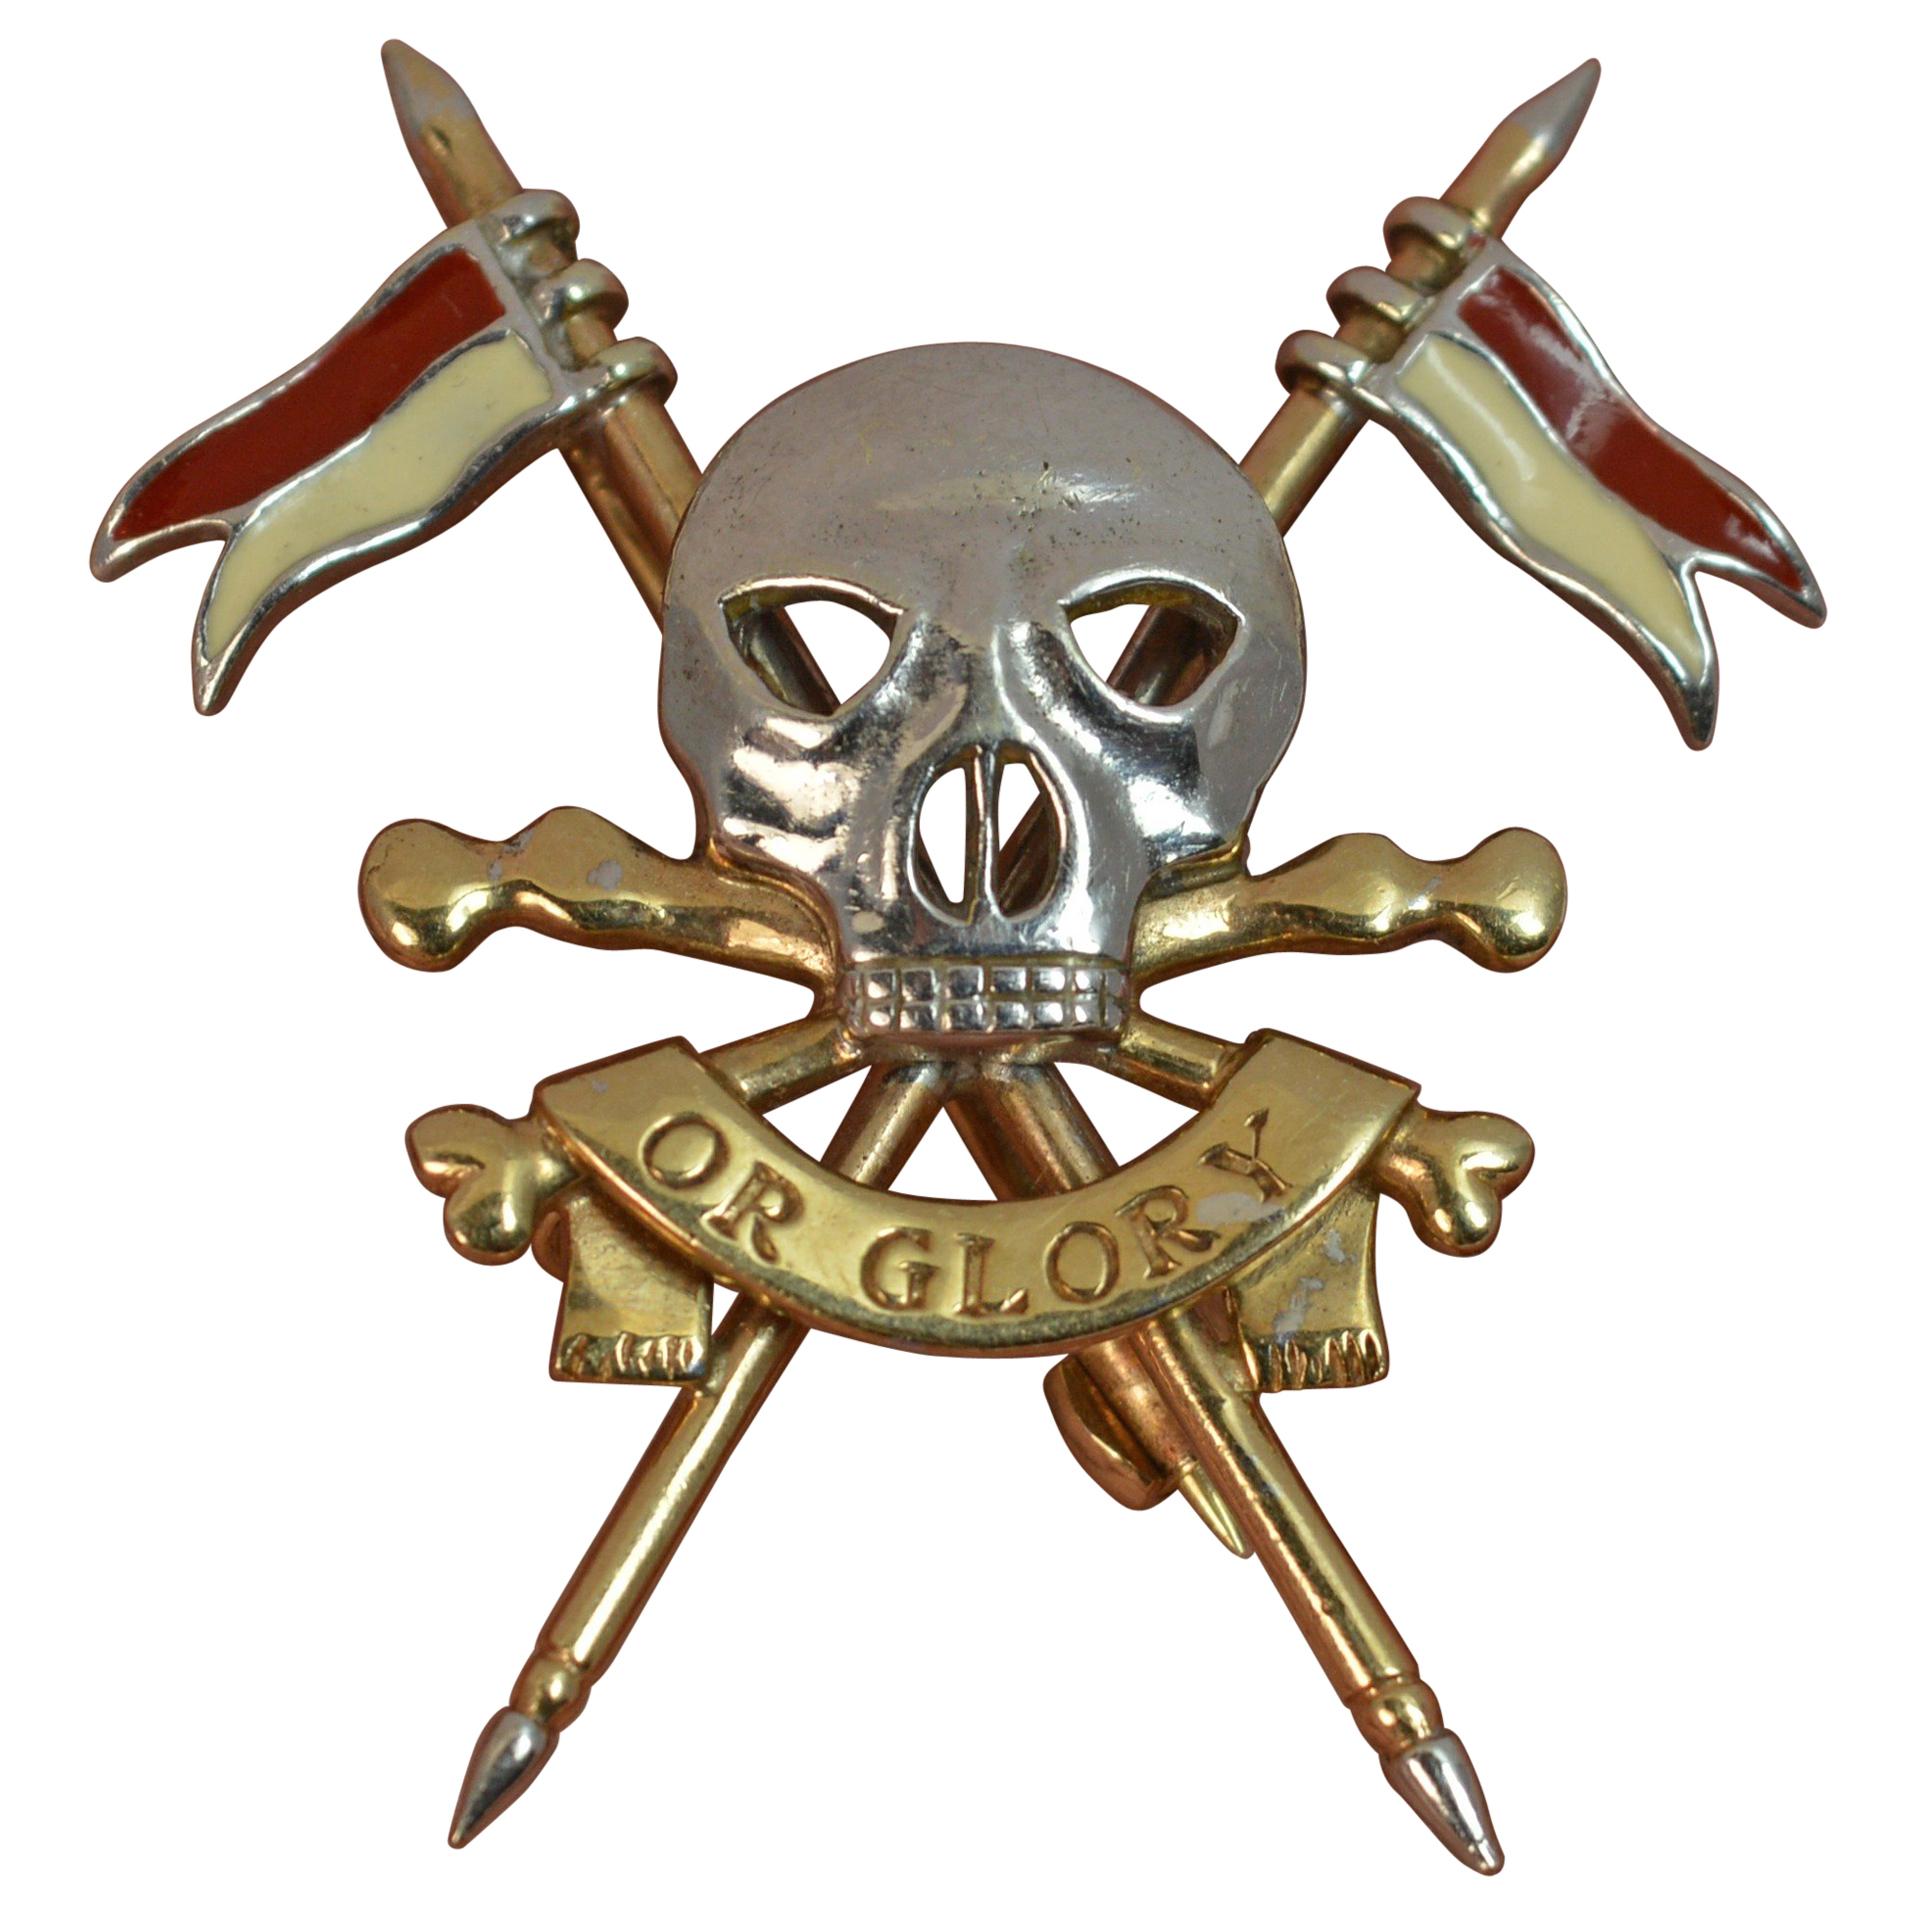 17th Lancers Death or Glory 9 Carat Gold Skull Design Brooch